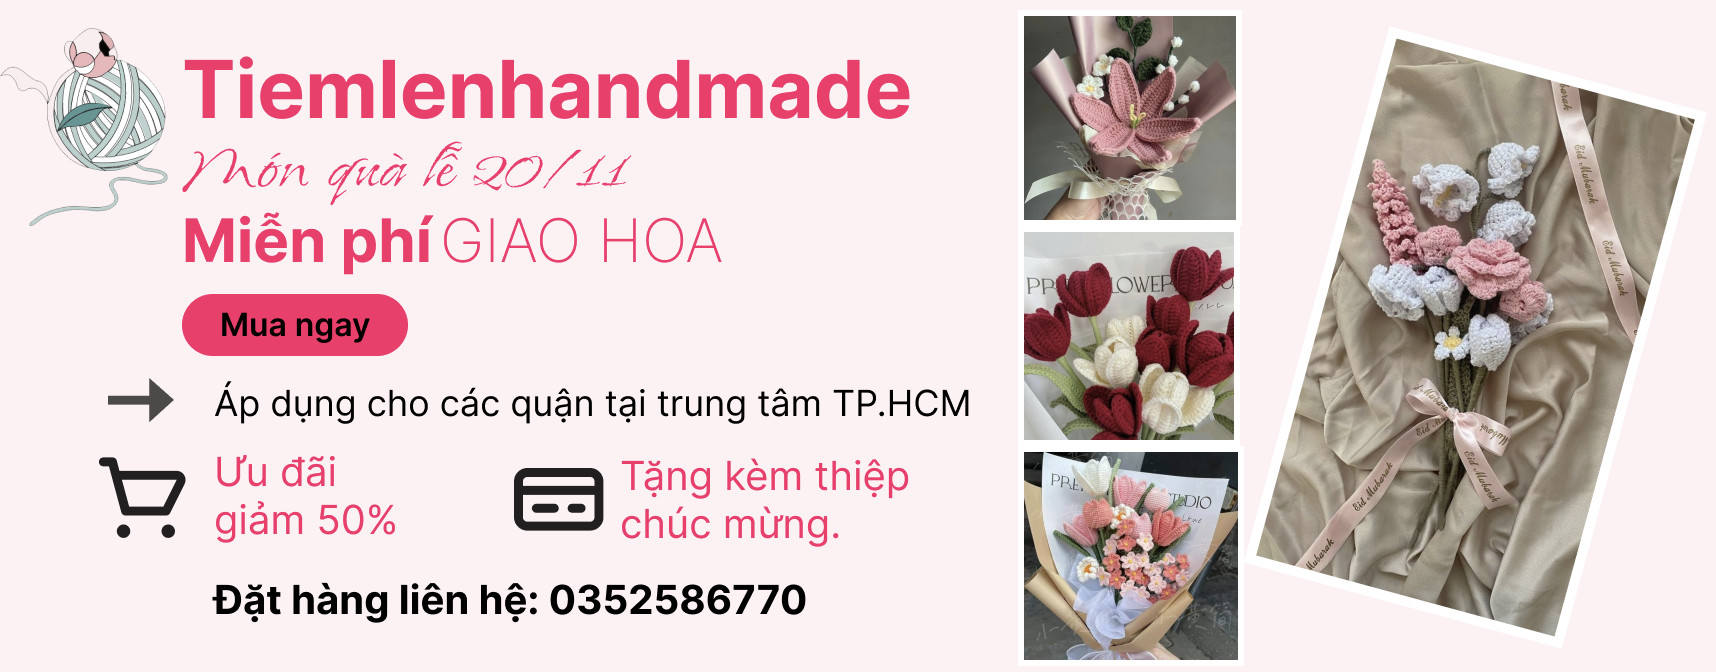 Hoa-handmade